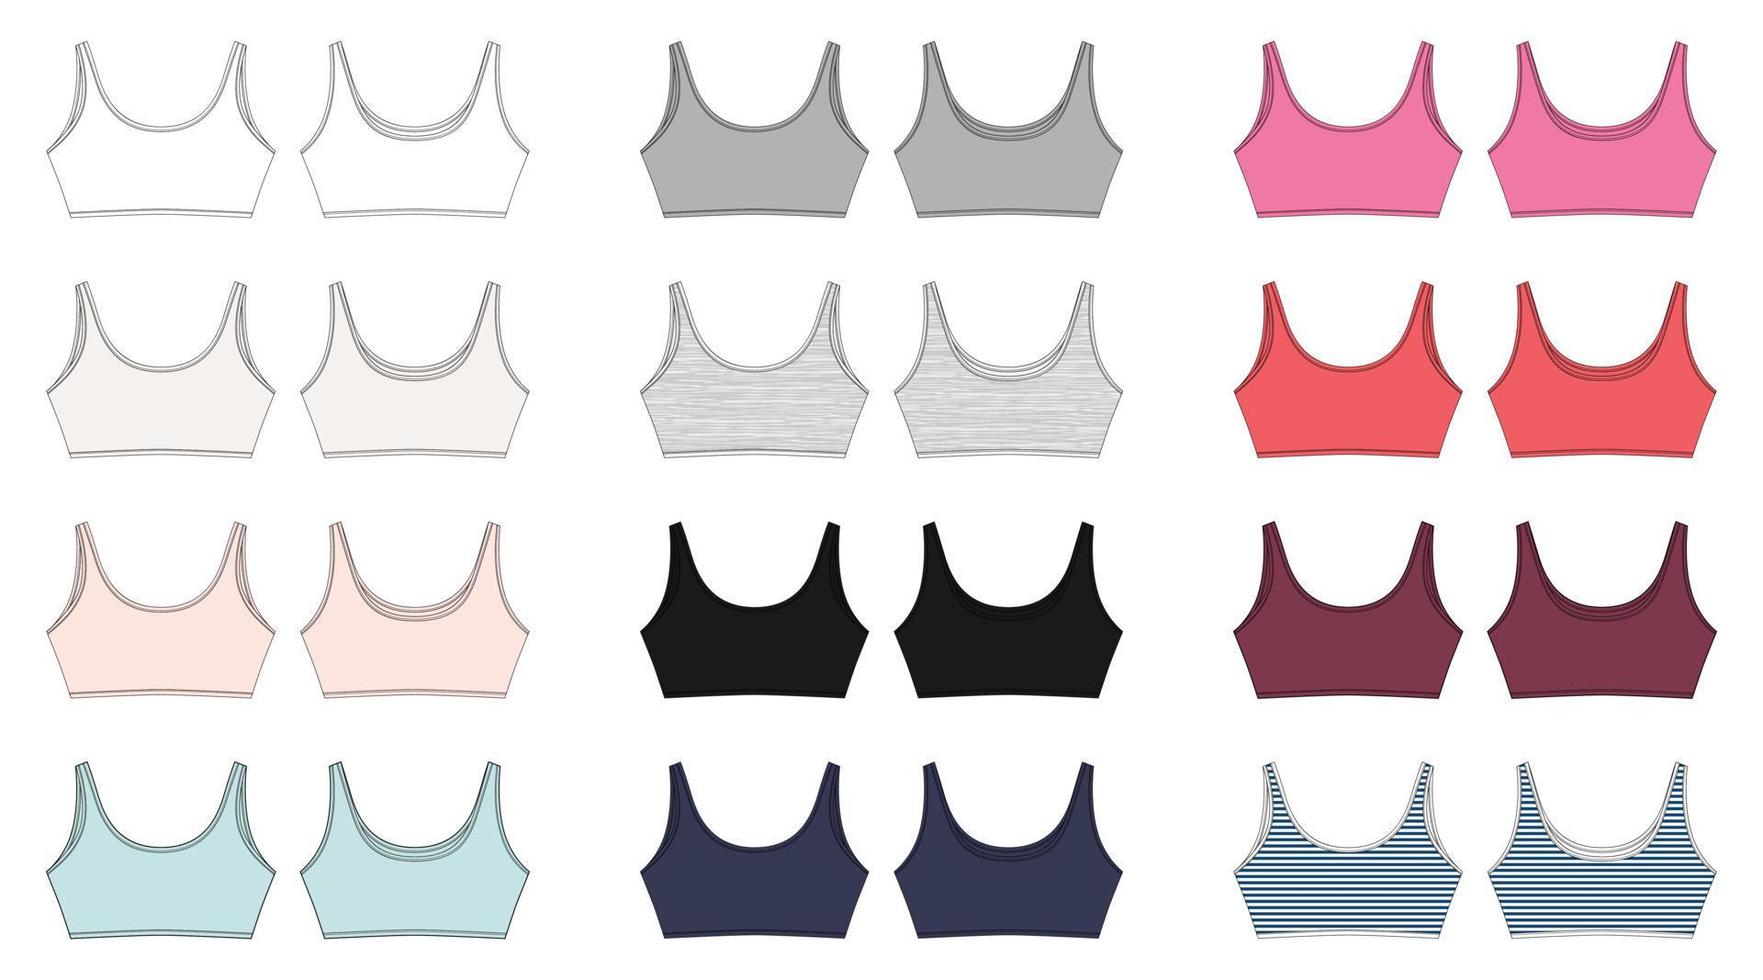 uppsättning av teknisk skiss av behå för flickor isolerade. yoga underkläder design. vit, grå, svart, blå, mjölk, rosa, röd, färger melange och randigt tyg. vektor